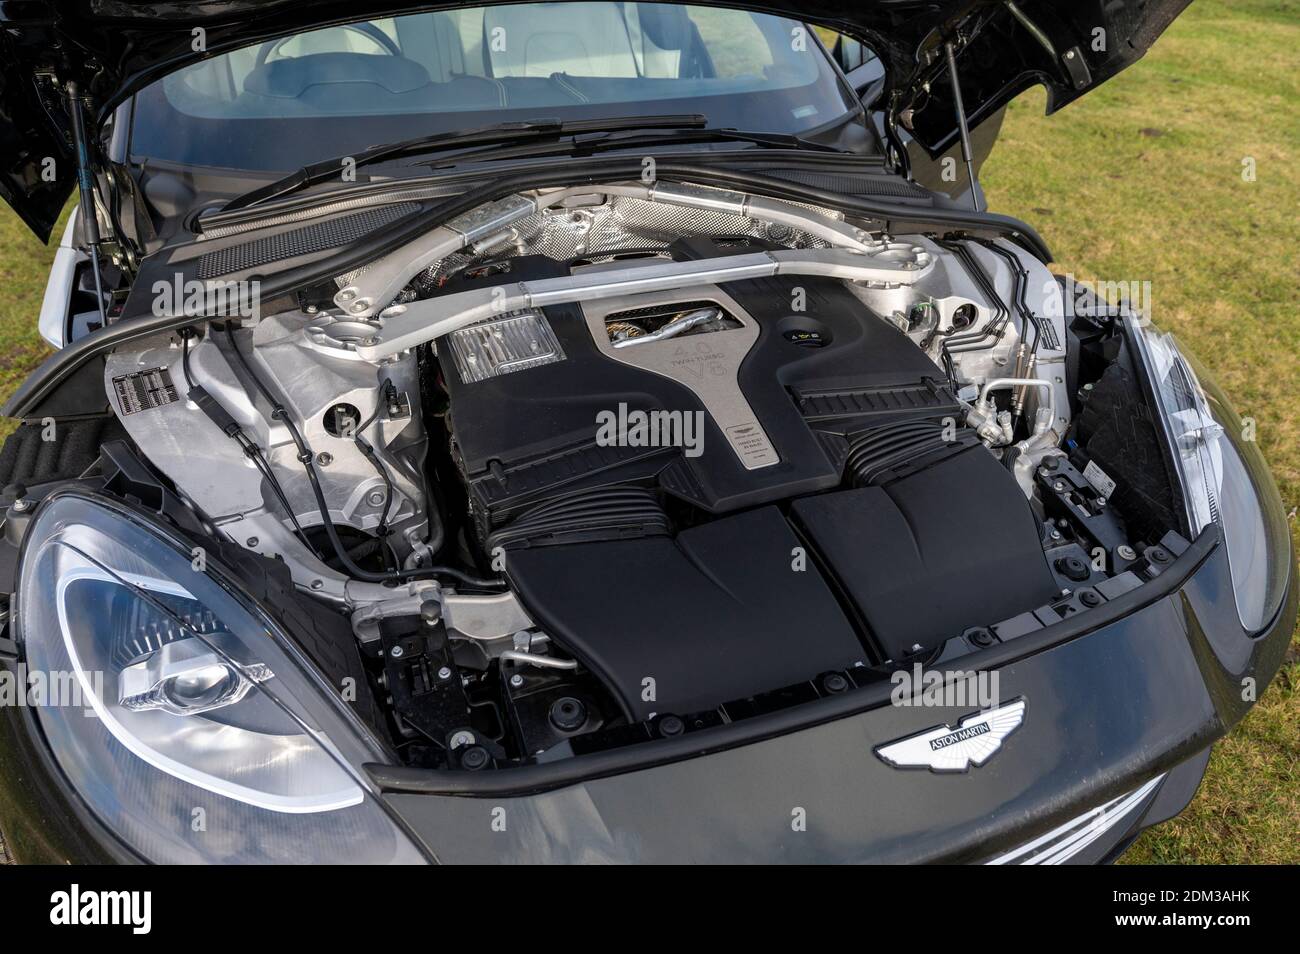 Moteur d'un vus V8 Aston Martin DBX de 4 litres avec une vitesse maximale de 180 km/h et un prix à partir de 158,000 £. Banque D'Images